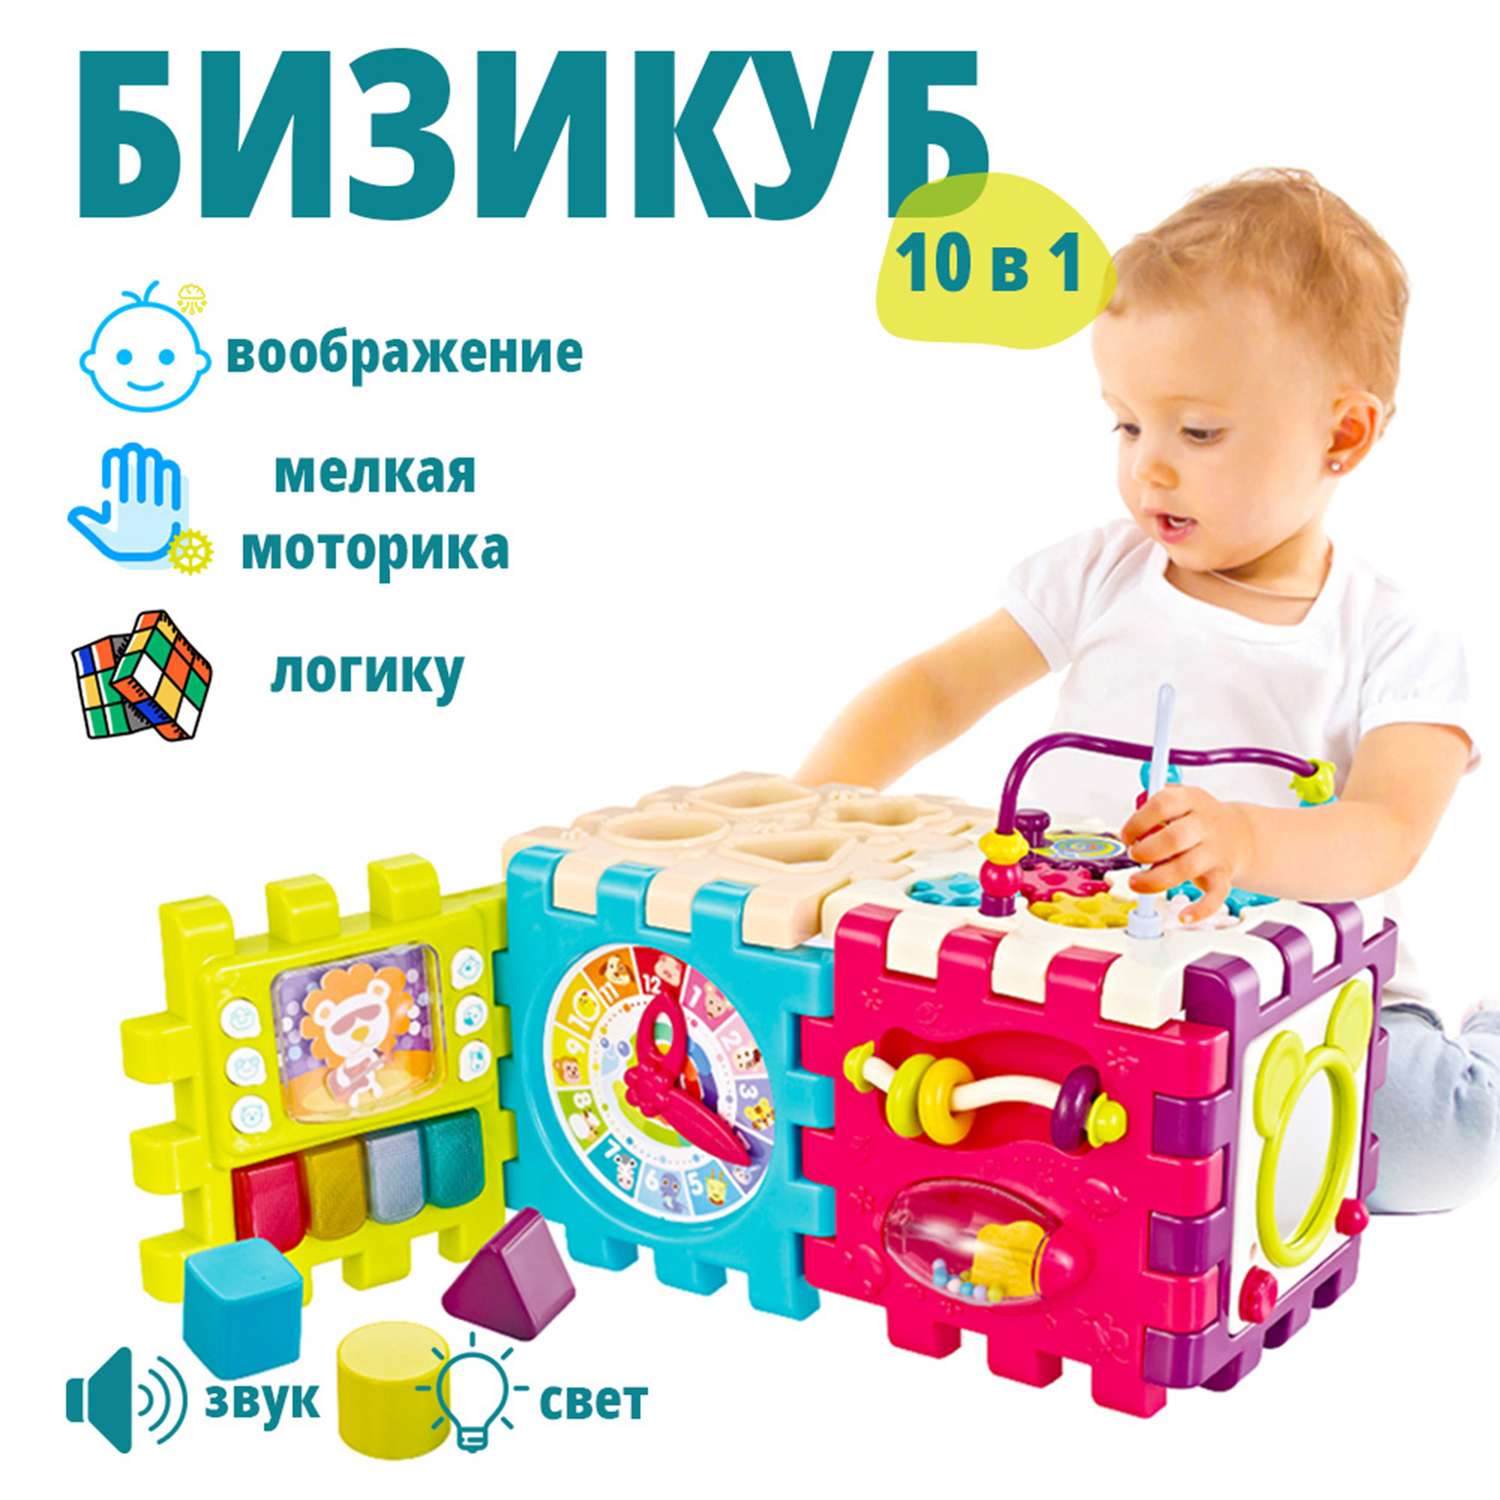 Детский игровой куб Гулливерчик купить онлайн в магазине Непоседа в Украине